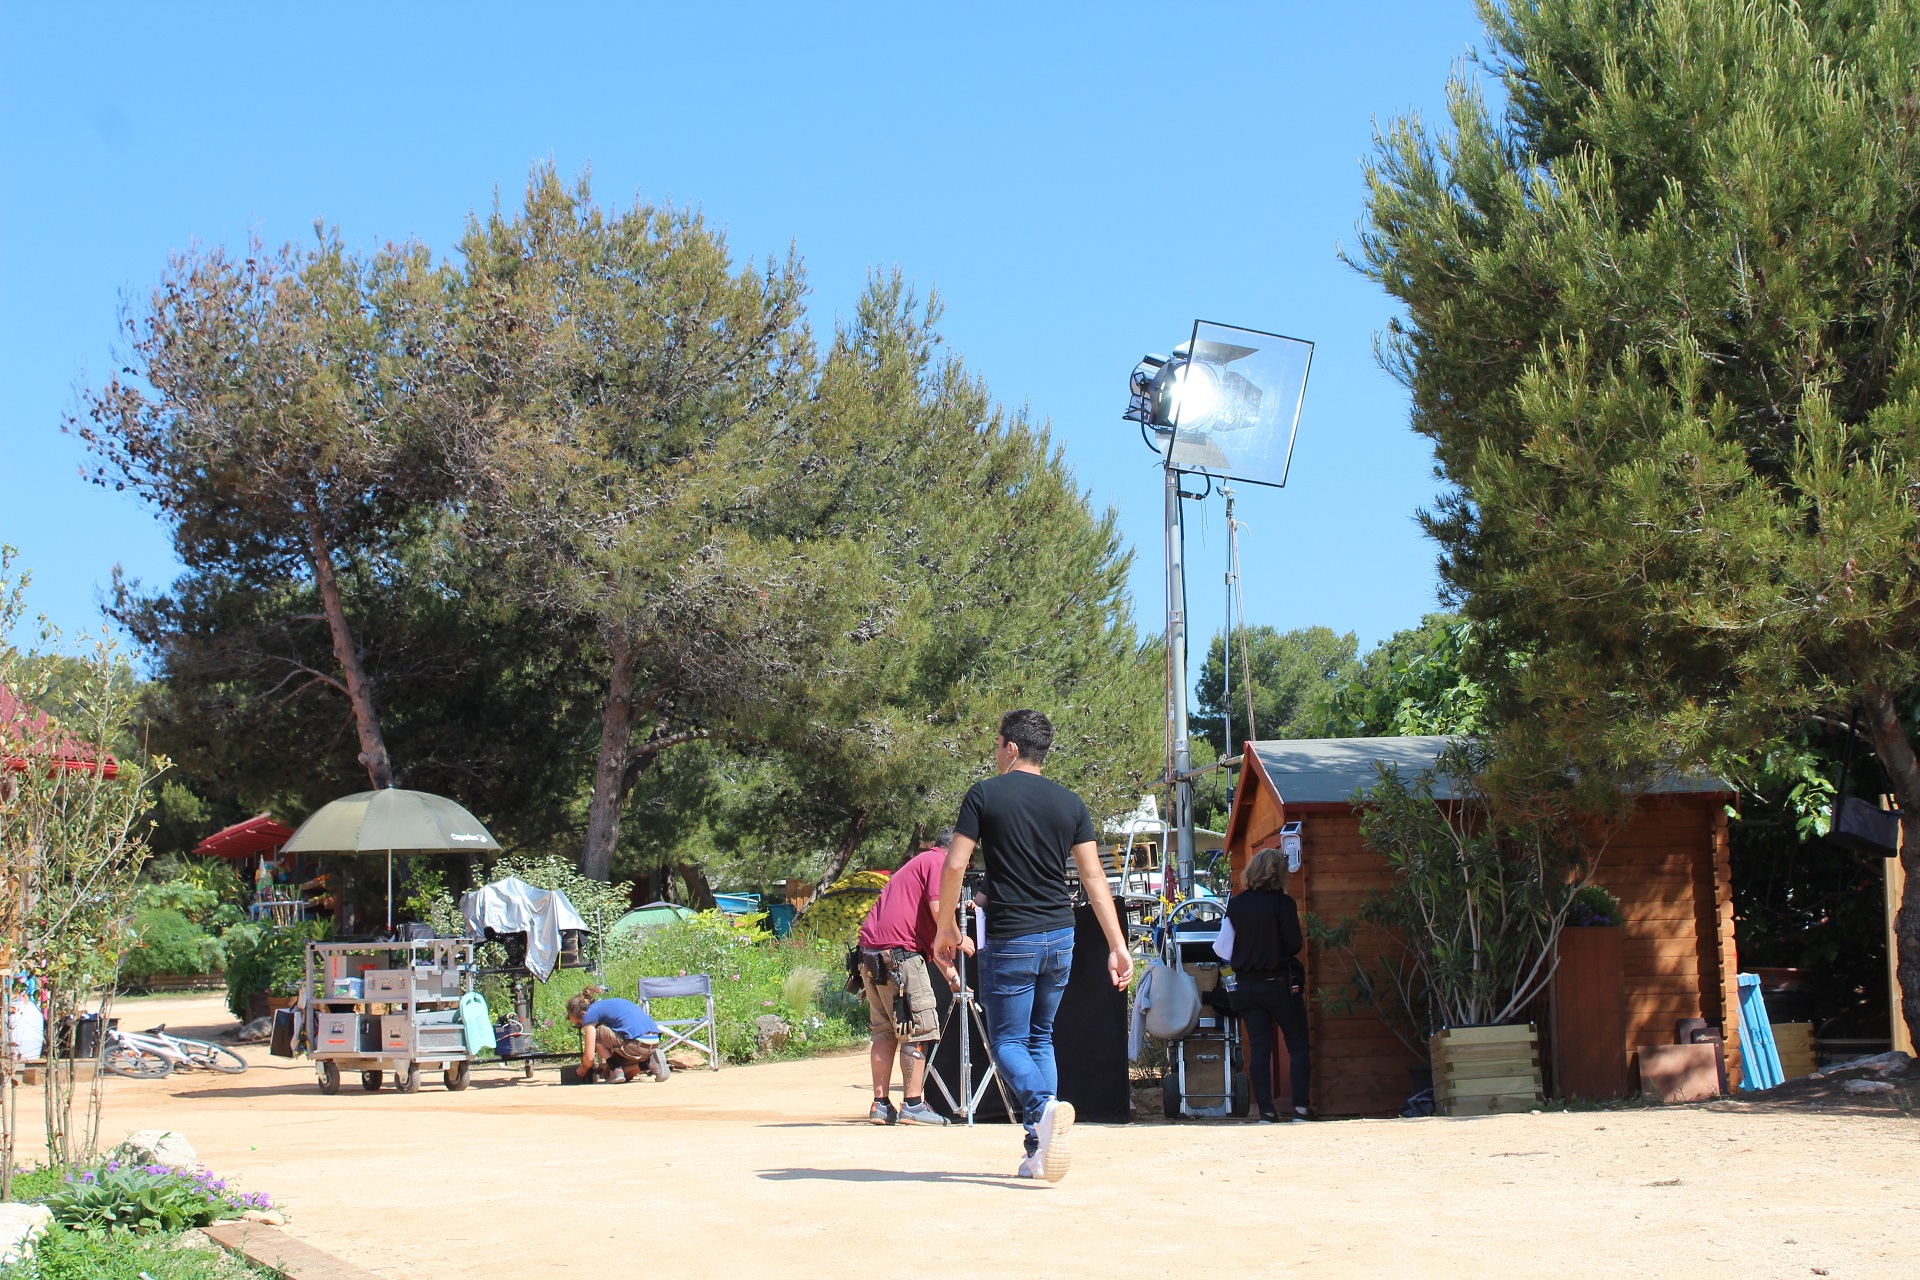 Lieu de tournage Camping Paradis - Martigues - © Otmartigues / ElodieM